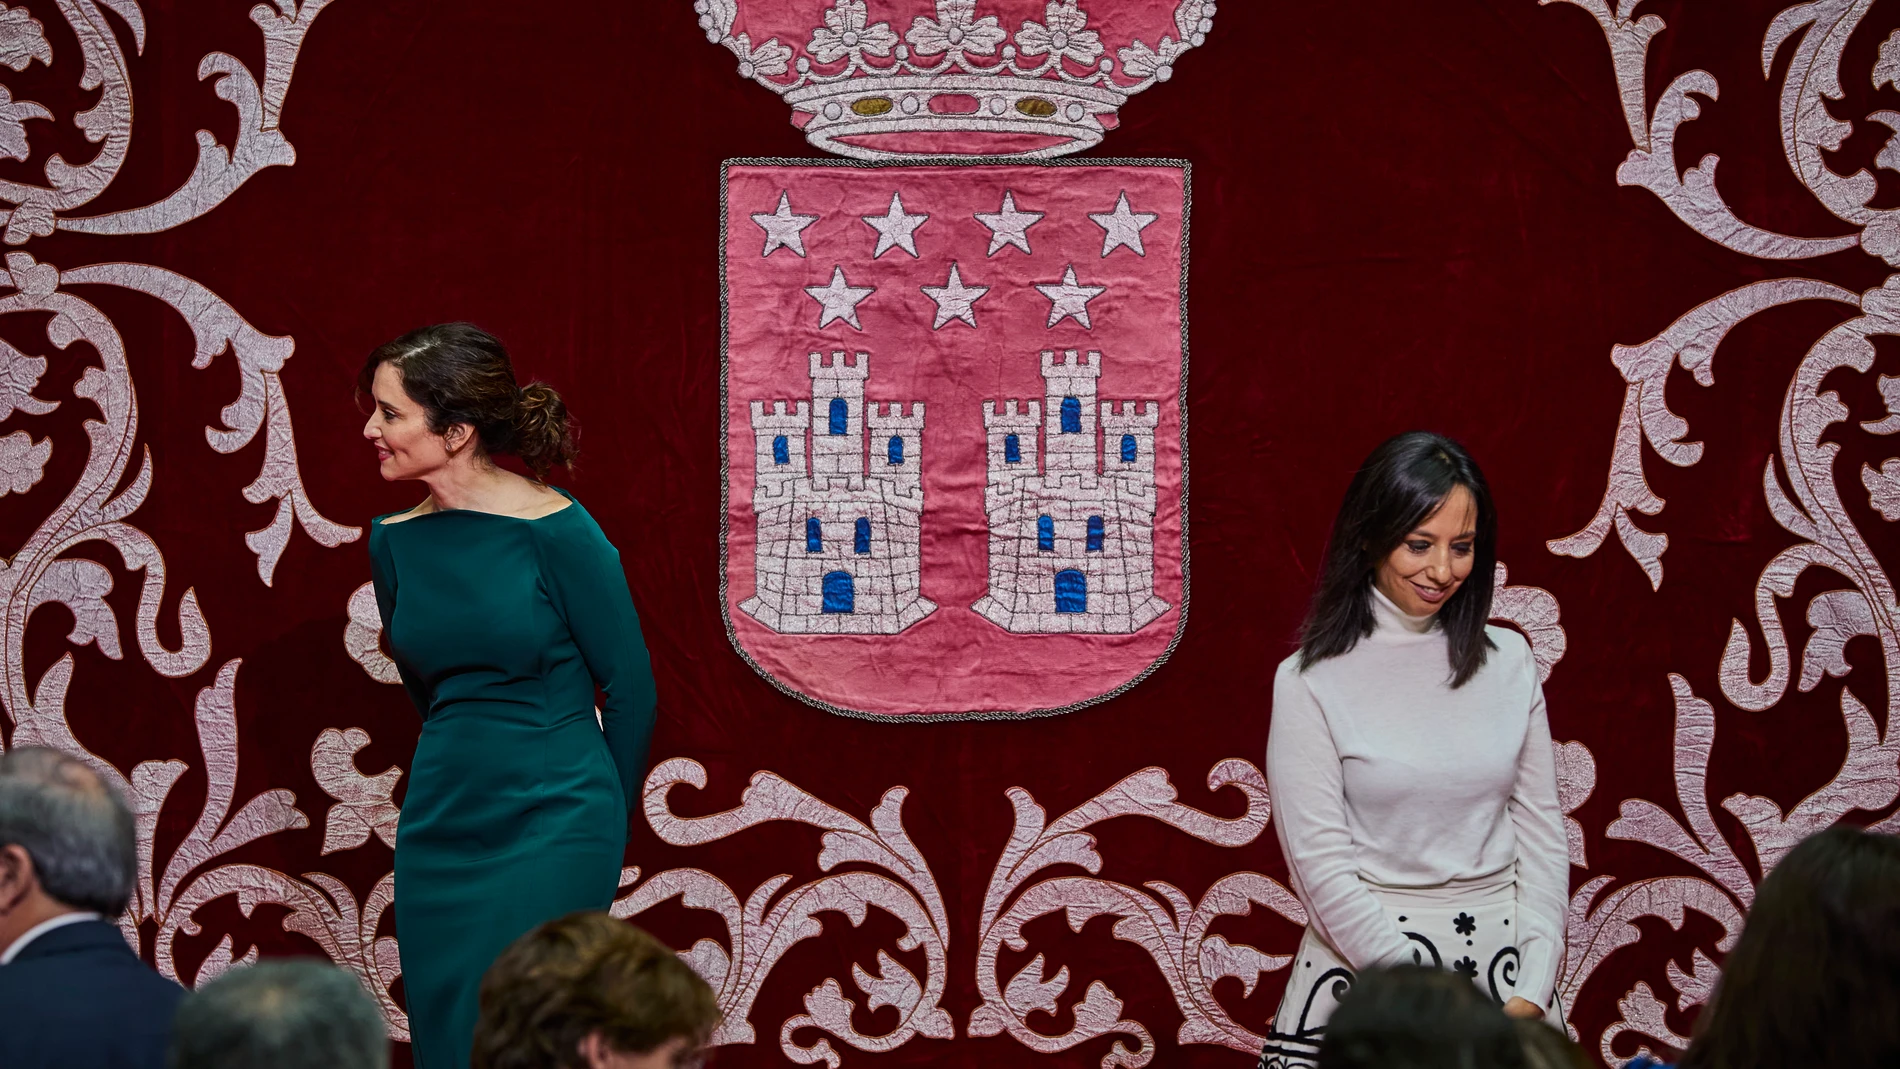 La presidenta de la Comunidad de Madrid, Isabel Díaz Ayuso junto a la delegada del Gobierno en Madrid, Mercedes González, al finalizar el acto institucional (6 de diciembre) en el patio central de la Real Casa de Correos en Madrid este viernes